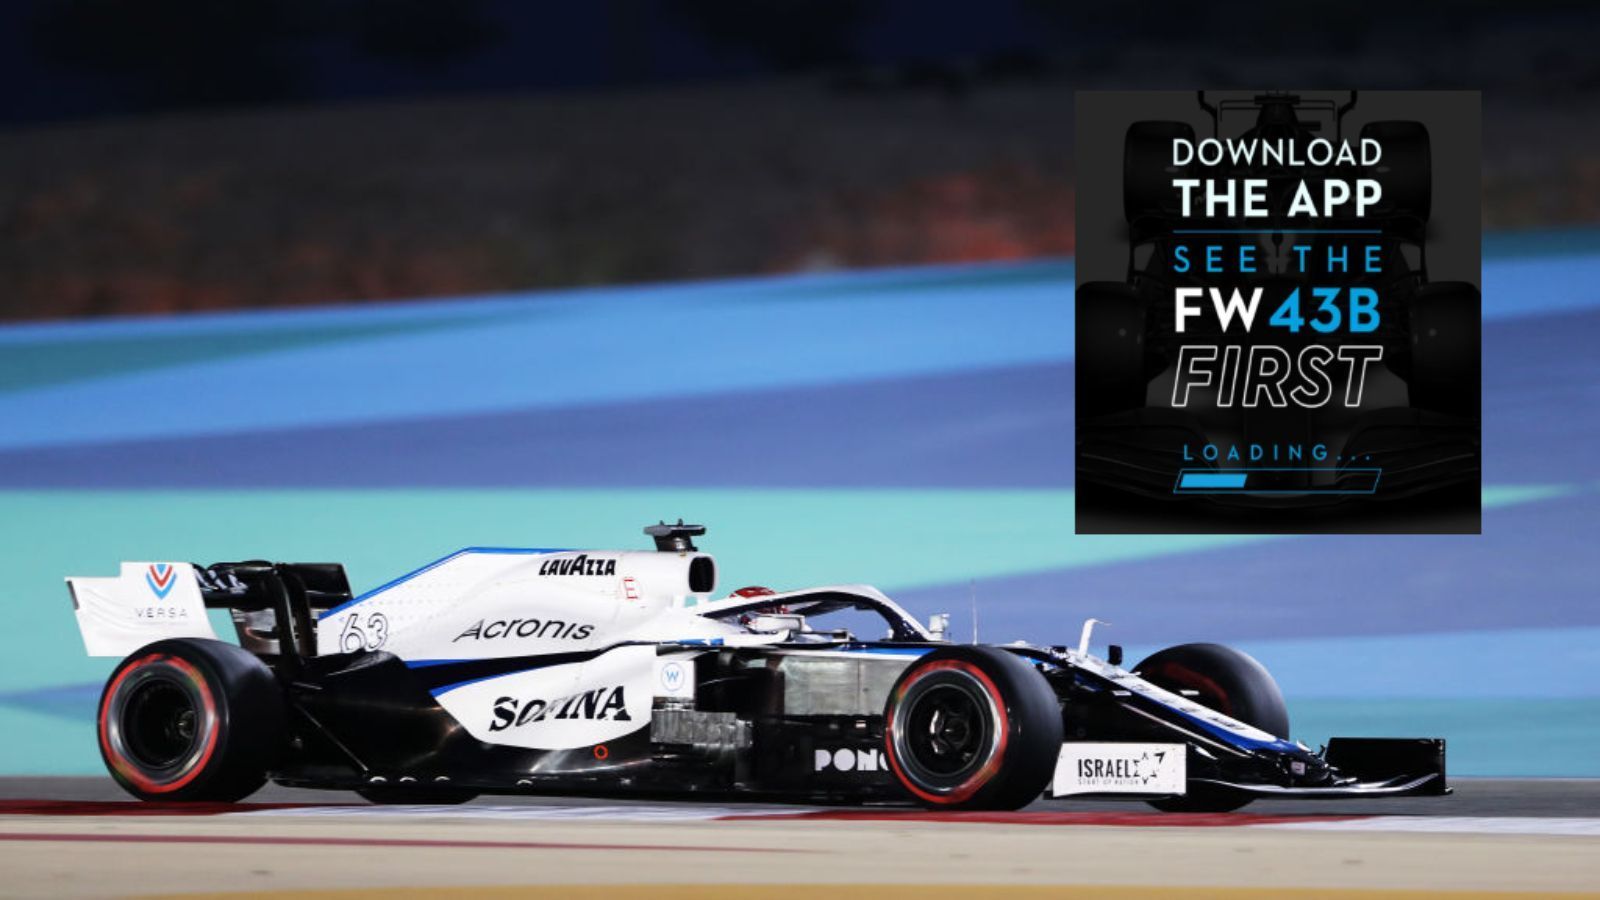 
                <strong>Gehackte App verhindert Launch des neuen Williams</strong><br>
                Eigentlich wollte das Williams F1-Team sein neues Gefährt für die Formel 1-Saison  vorstellen, als vorletztes Team insgesamt. Dabei hatte das Team mit einer App geworben, wo die ersten Bilder und exklusive 360 Grad-Fotos zu sehen sein sollten. "Downloade die App und sieh den FW 43B als Erstes", so die Werbung. Das ging allerdings nach hinten los, rund eine halbe Stunde vor dem Launch des Wagendesigns teilte Williams auf Twitter mit, dass die App gehackt wurde der Launch somit nicht wie geplant stattfinden kann. "Wir können uns nur entschuldigen", ließ das Team verlauten.
              